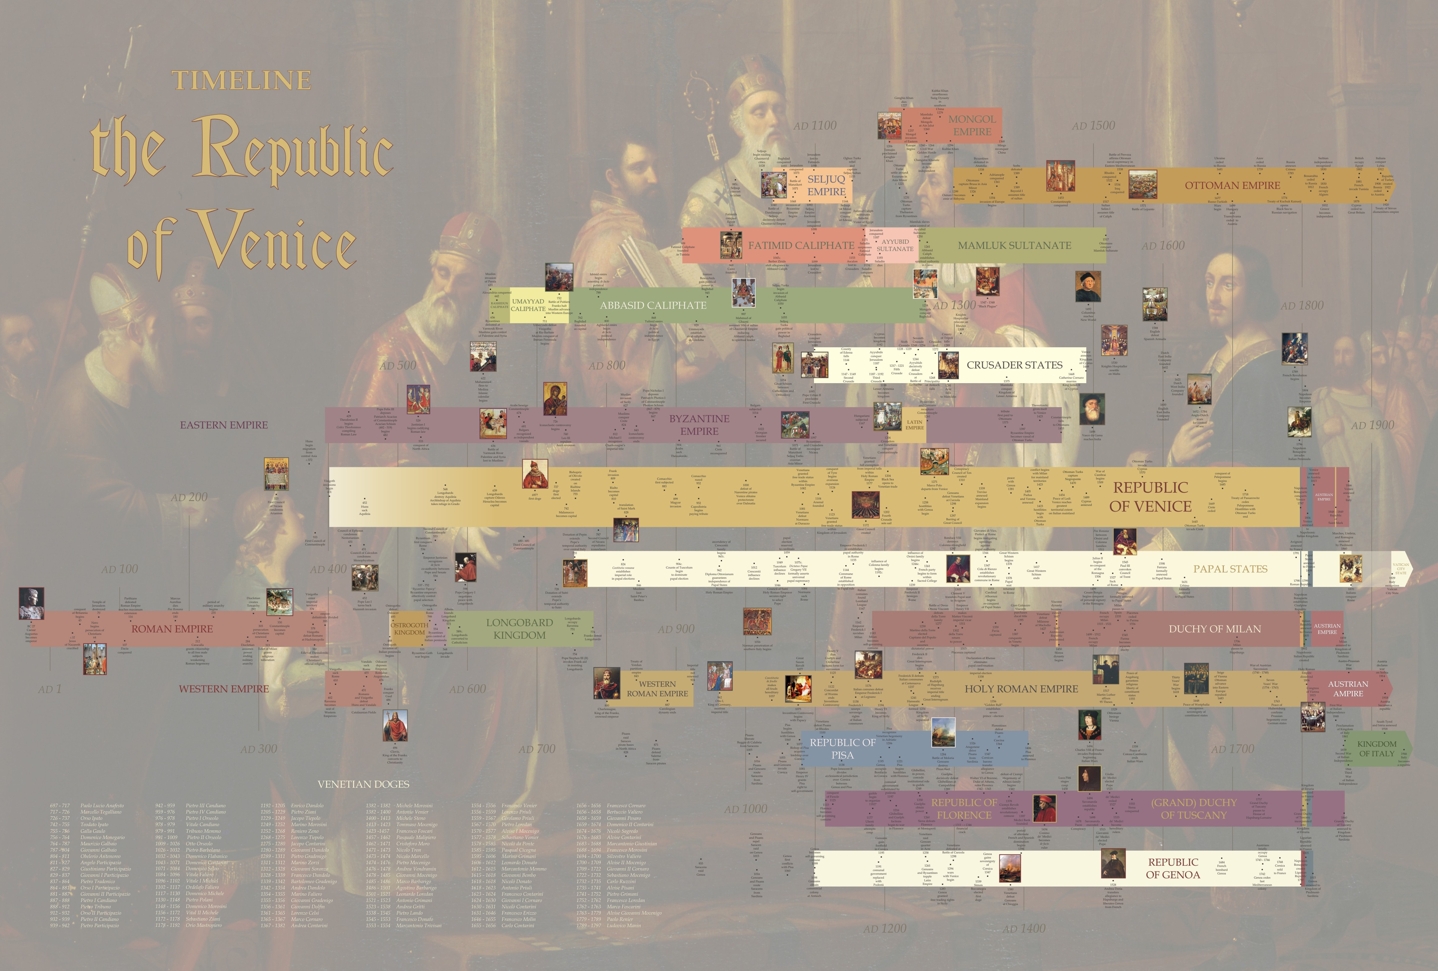 History of Venice timeline